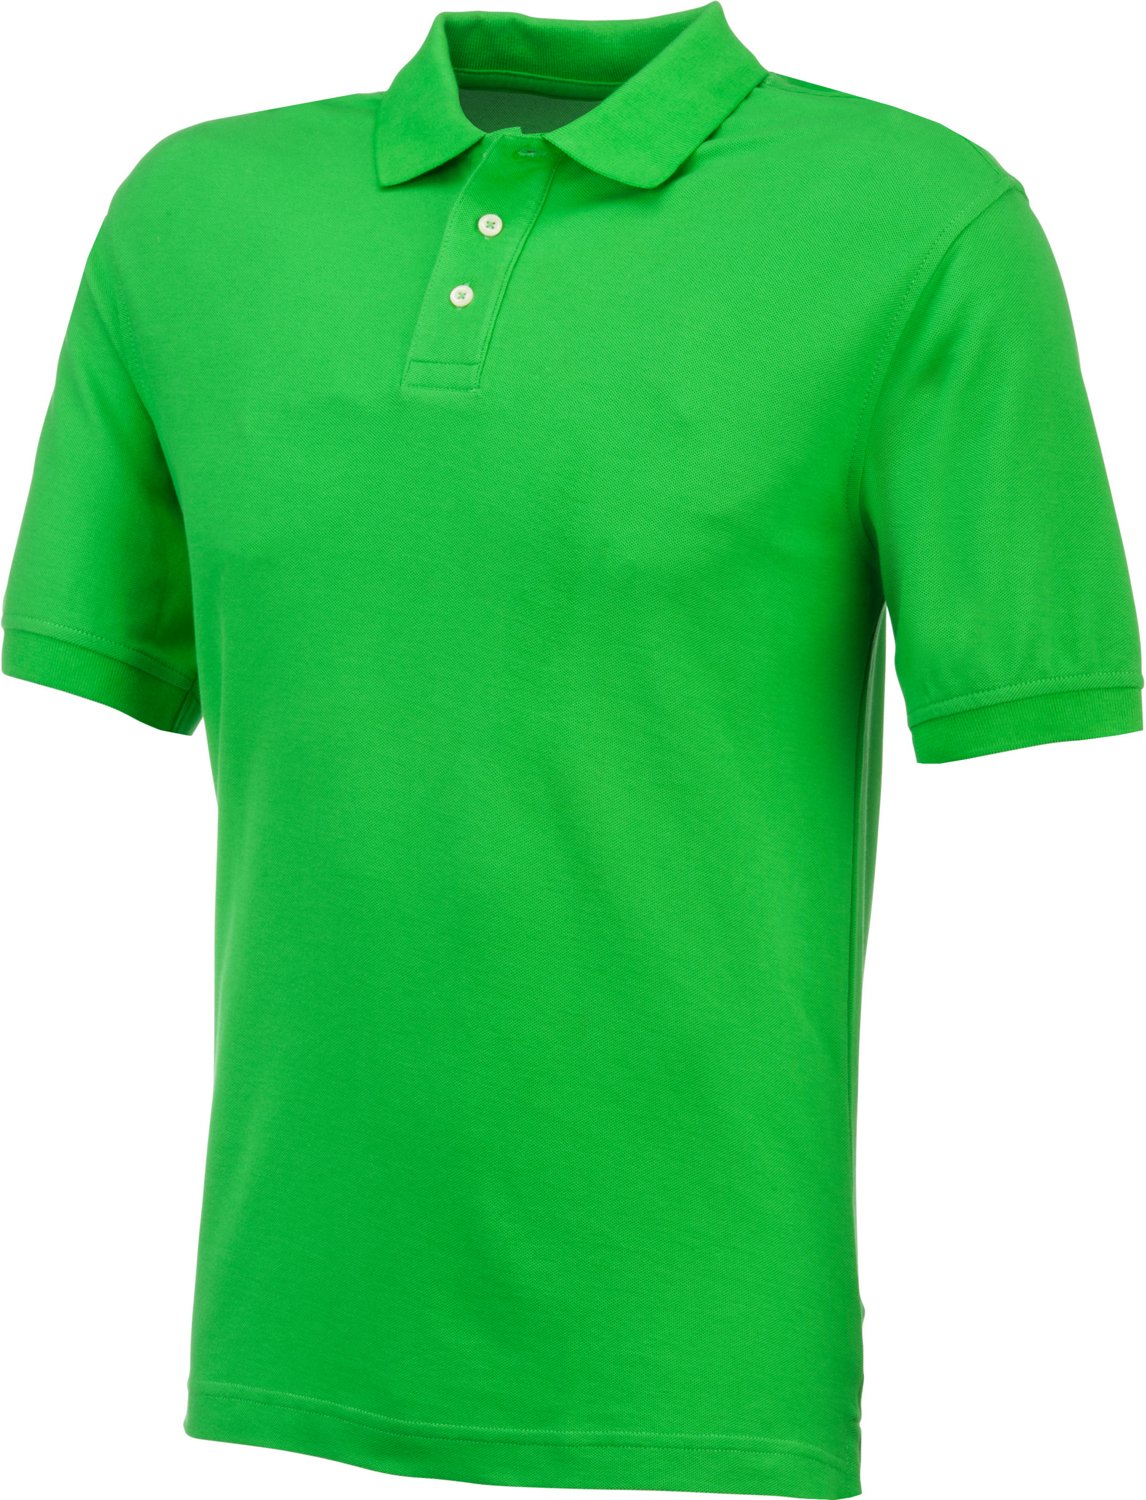 Magellan Outdoors Men's Short Sleeve Polo Shirt | Academy